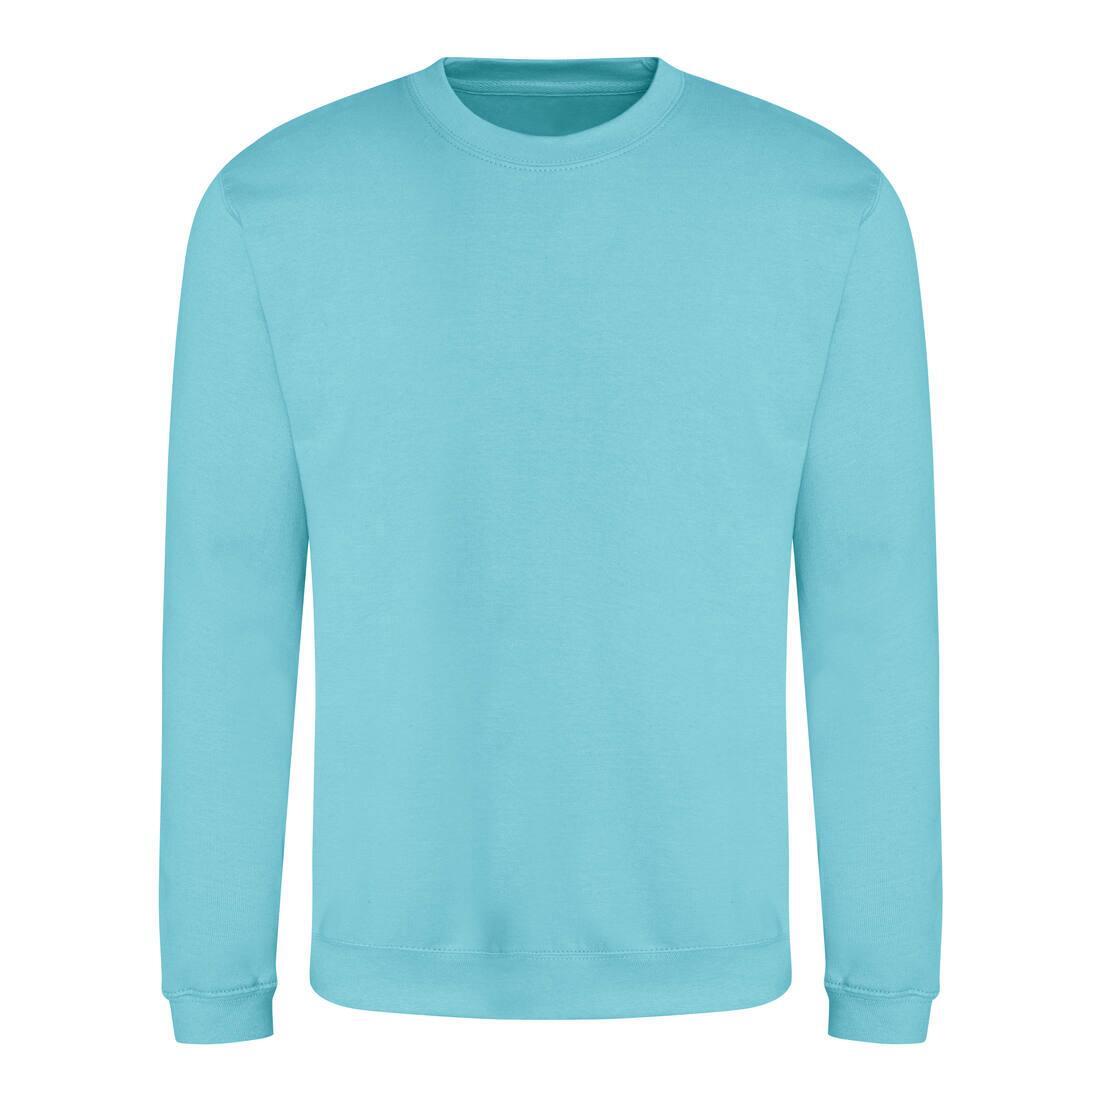 Sweater voor heren turquoise surf Just Hoods te personaliseren